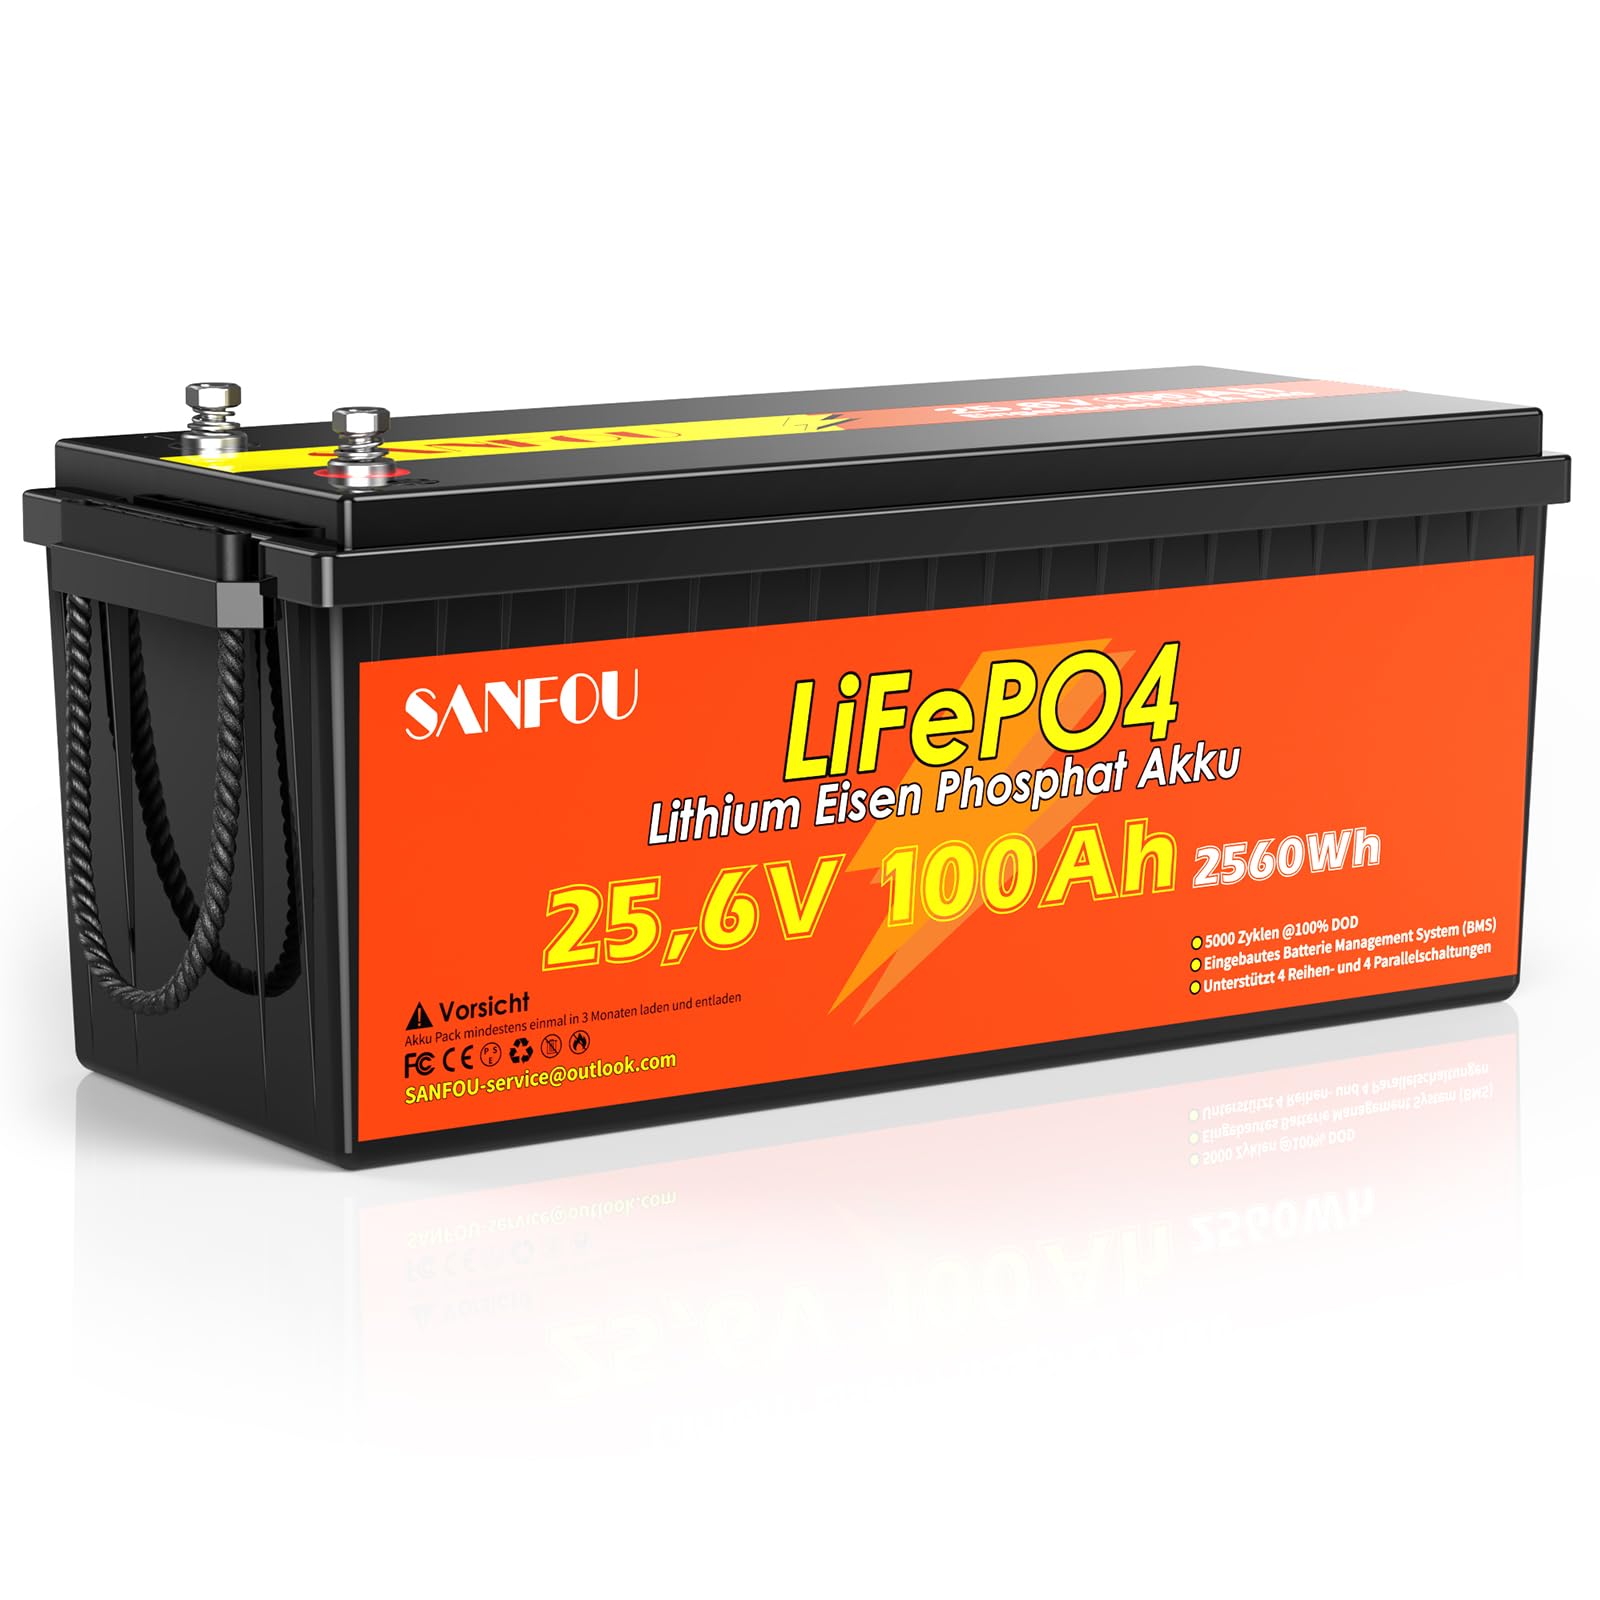 SANFOU 25.6V 100Ah LiFePO4 Batterie, Lithium Batterie Built-in 100A BMS, 2560Wh Deep Cycle Power, 5000+ Zyklen Akku für Wohnmobil, Wohnwagen, Anhänger und Solar Off-Grid System. von SANFOU